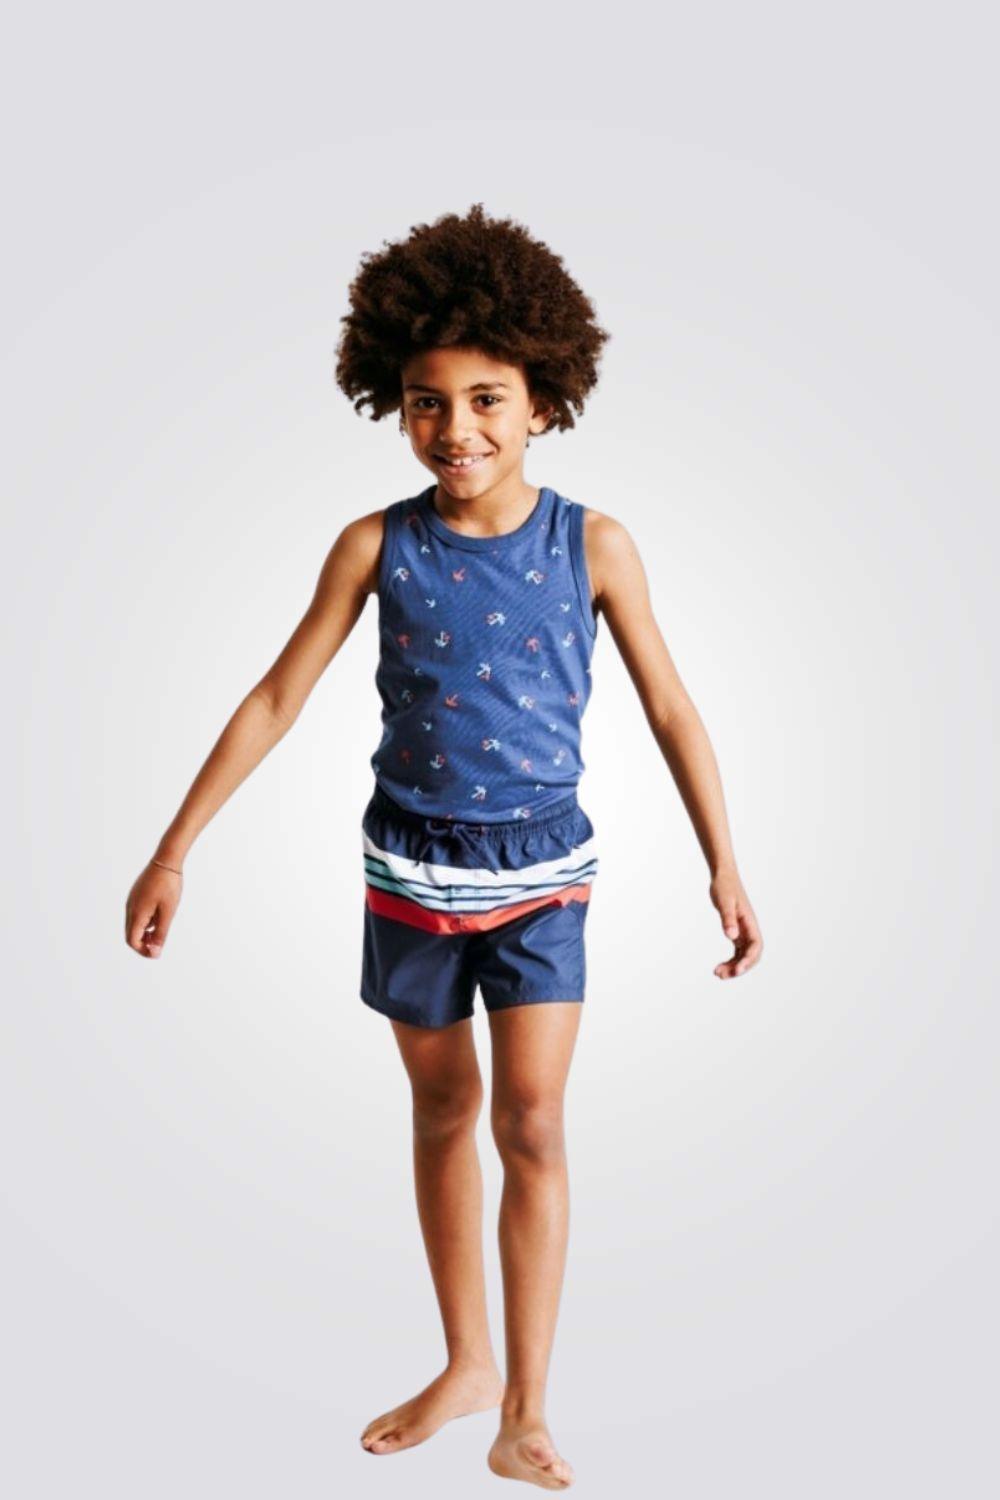 OKAIDI - בגד ים מכנס פסים לילדים - MASHBIR//365